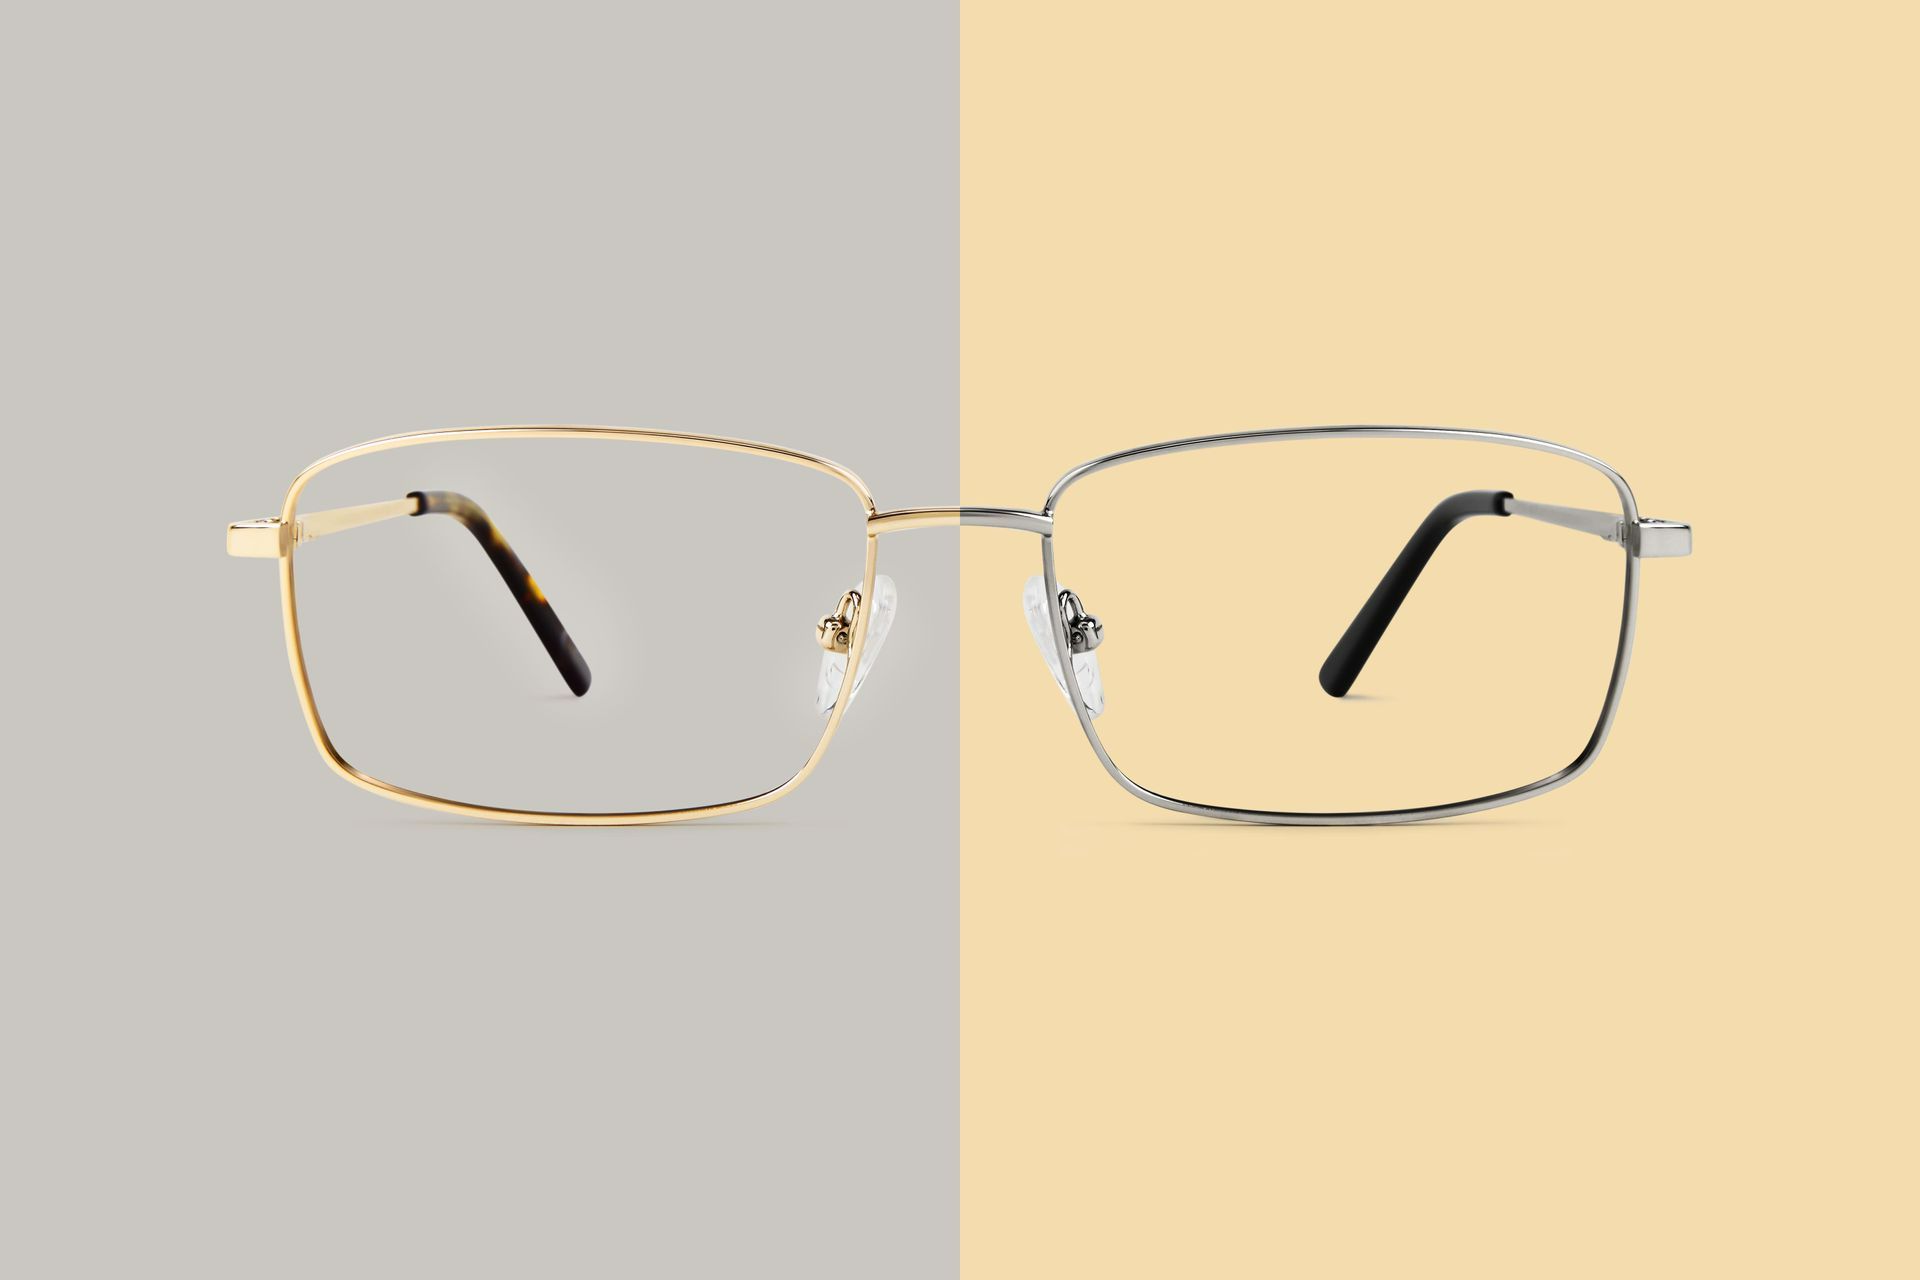 Paire de lunettes sur fond gris et jaune